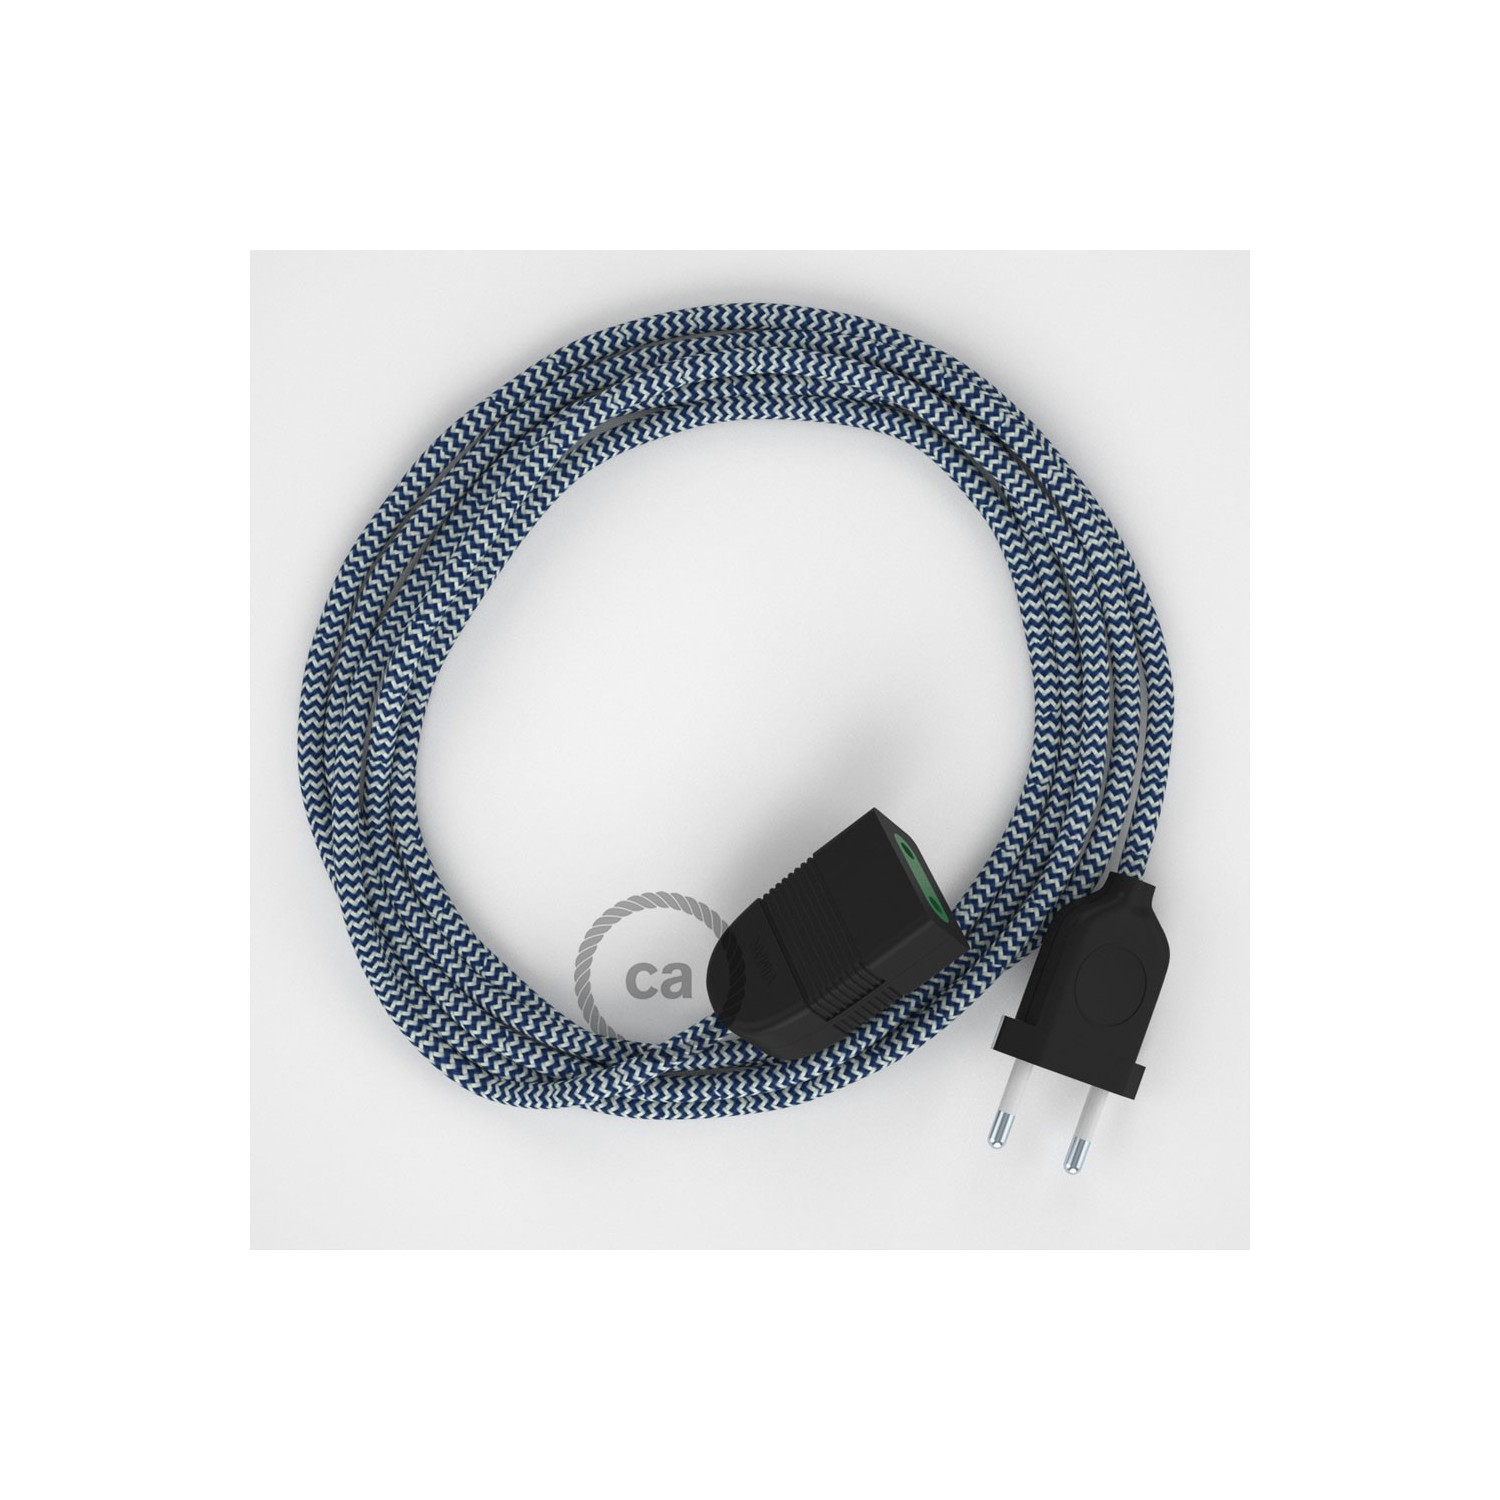 Podaljševalni kabel za napajanje (2P 10A) zigzag moder rejon RZ12 - Made in Italy